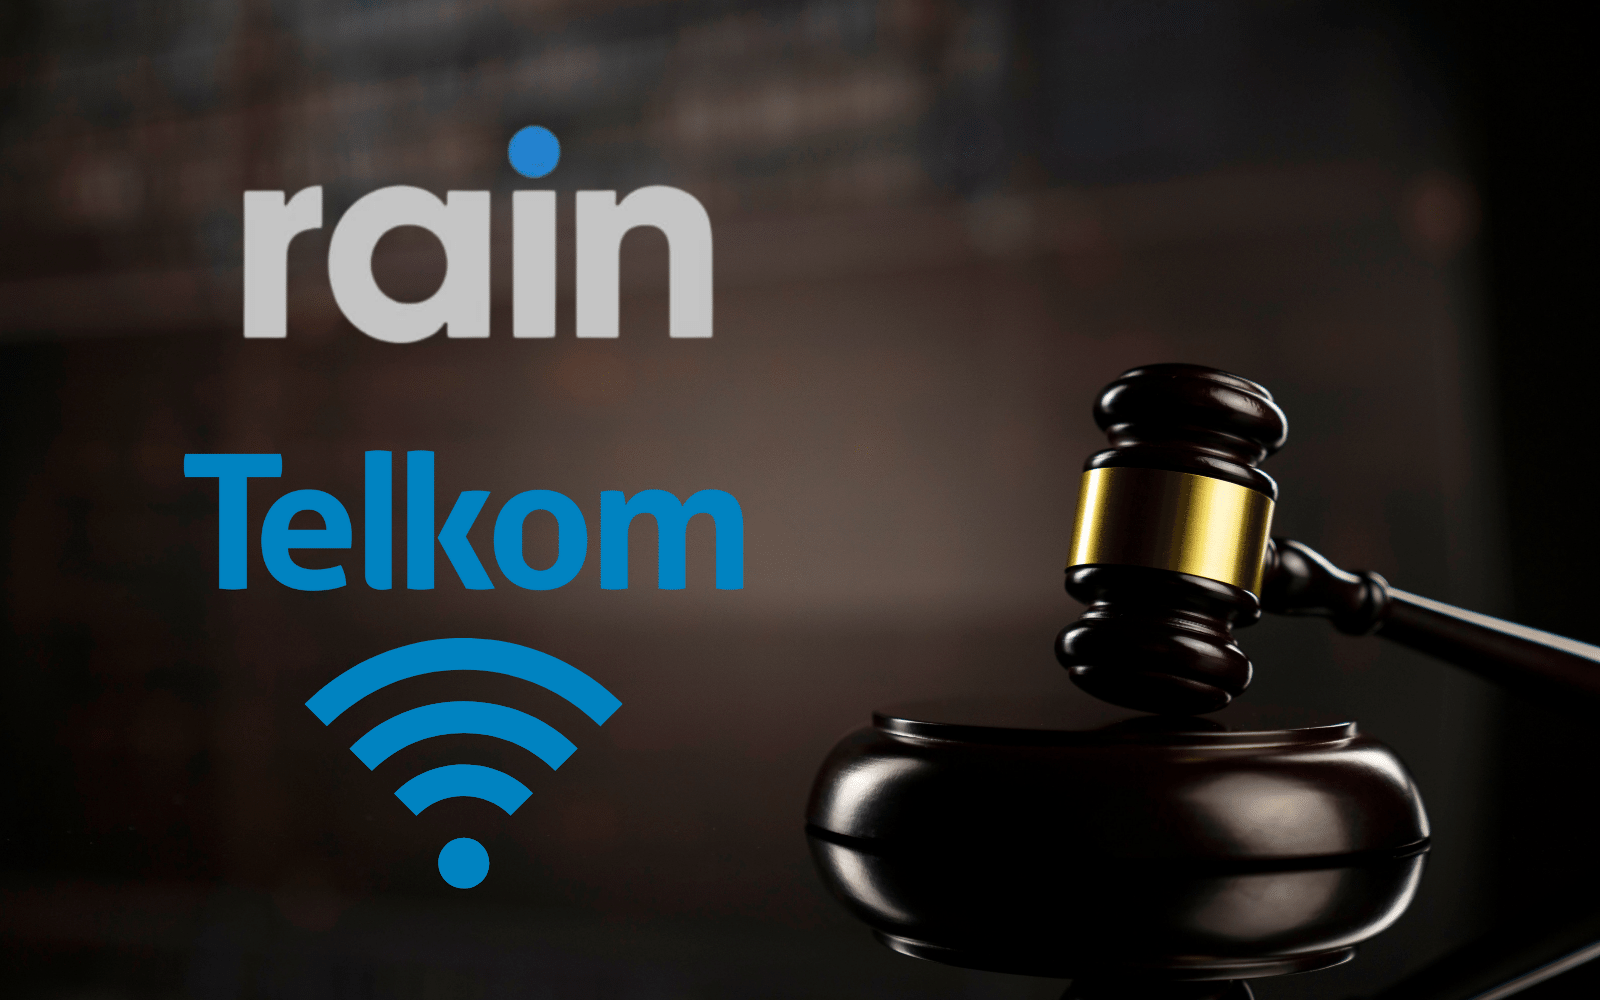 rain telkom merger